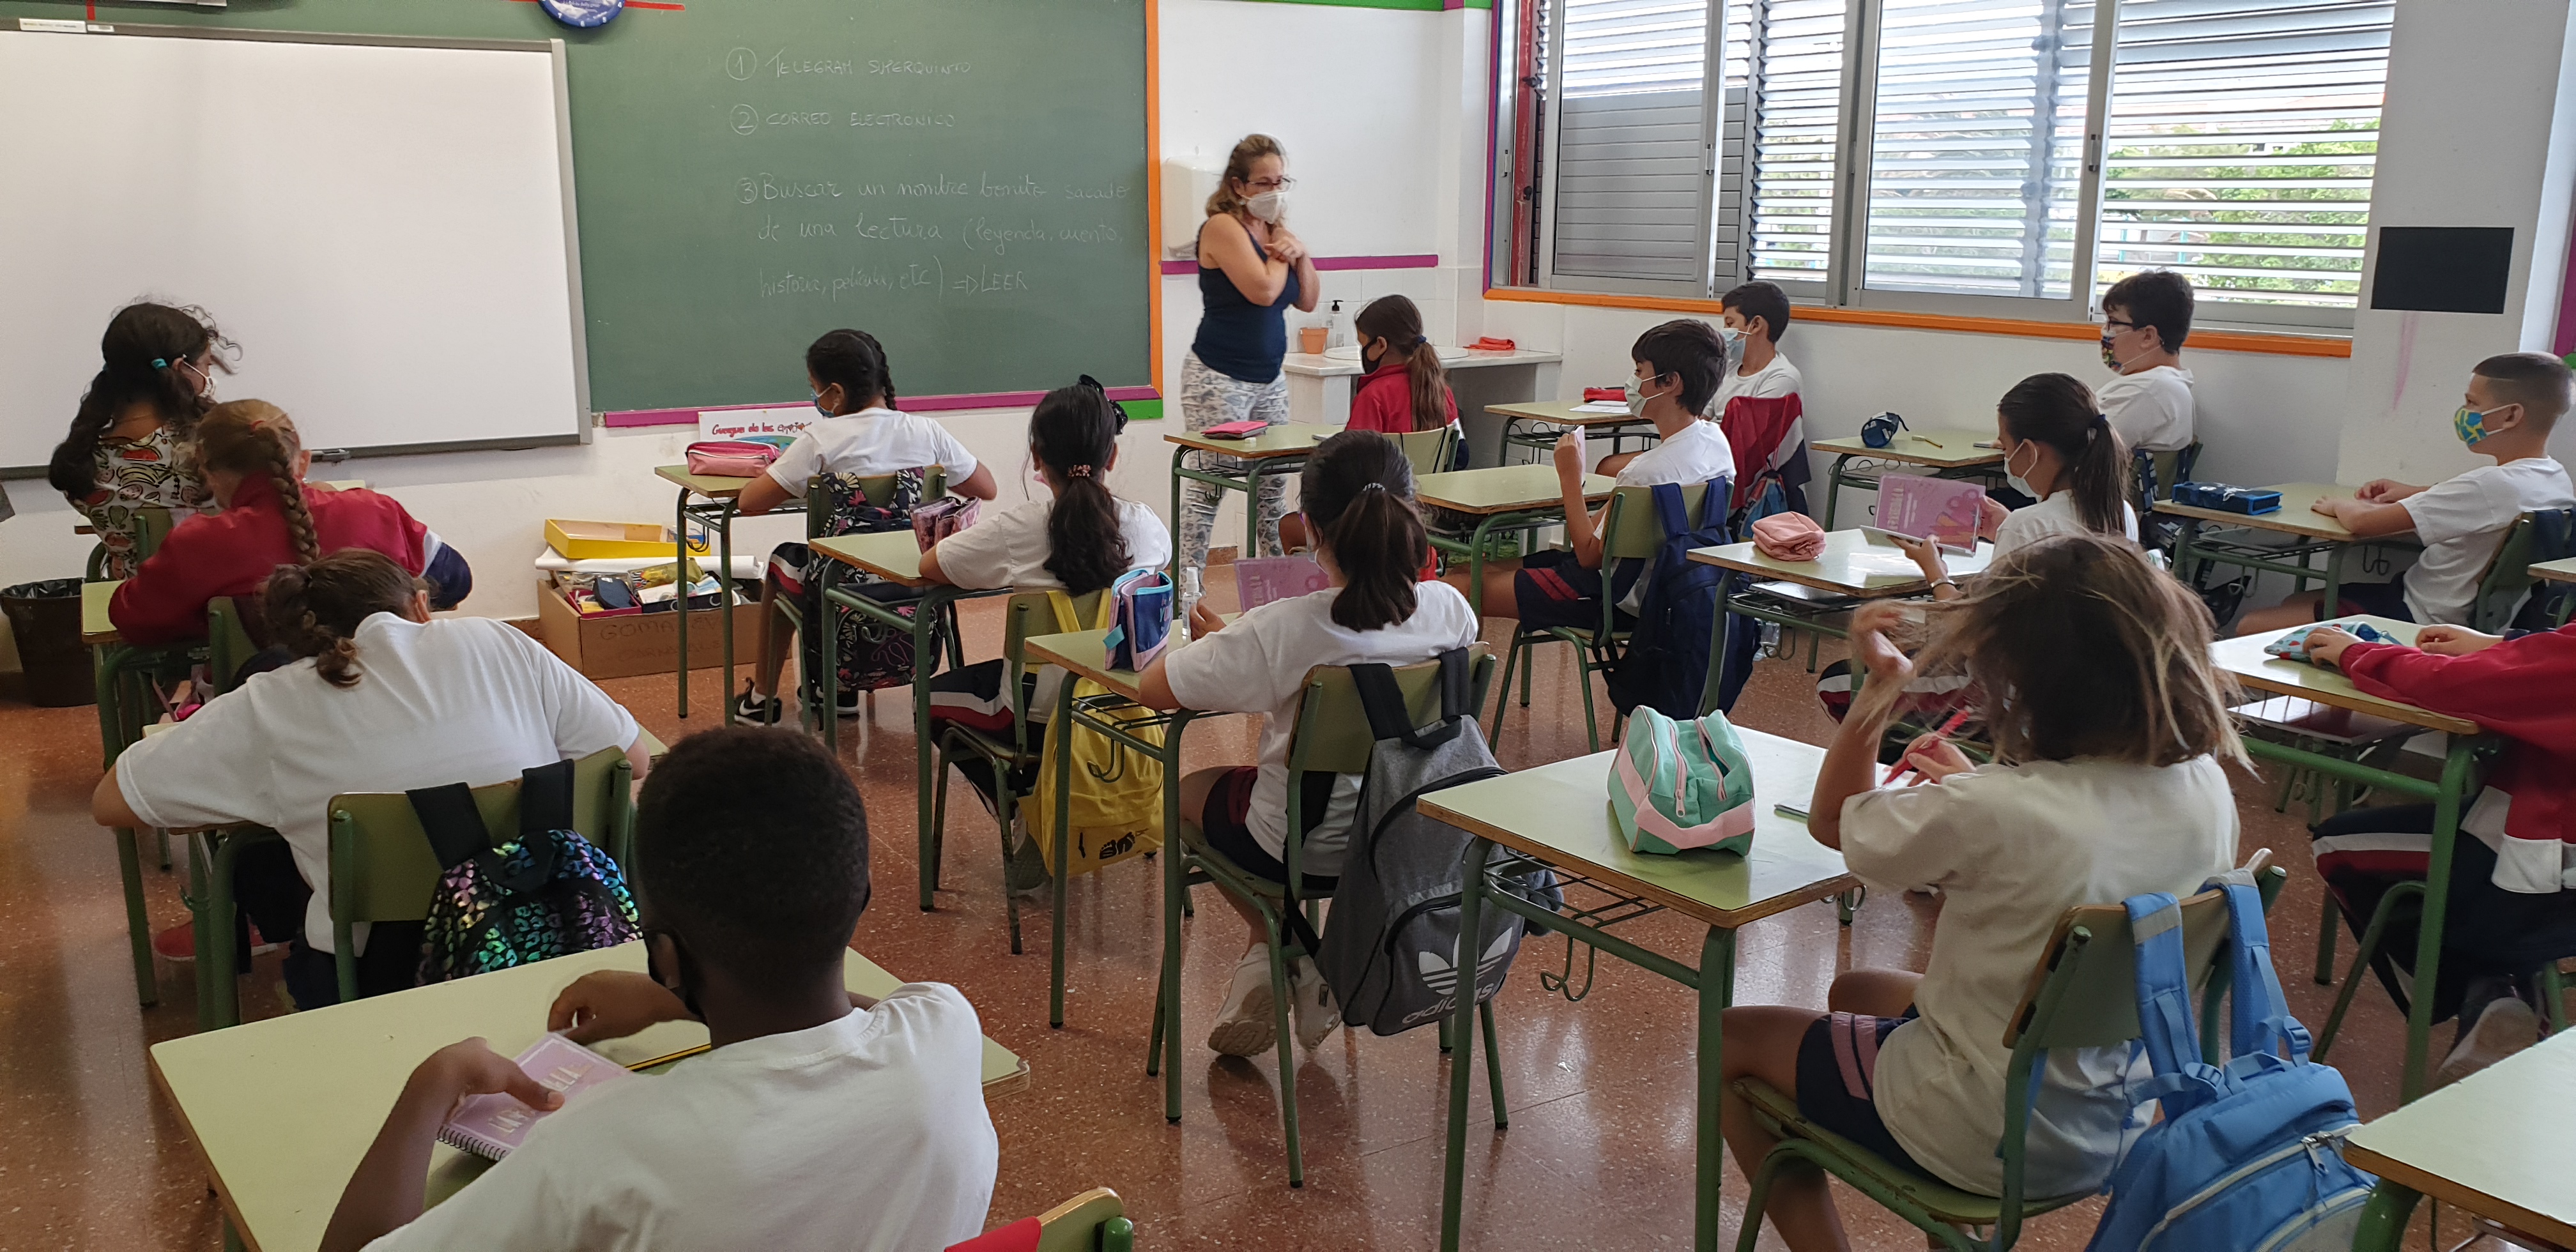 Tres profesores comienzan a impartir el Programa de Apoyo Escolar a 250 estudiantes de los centros educativos de Santa Lucía